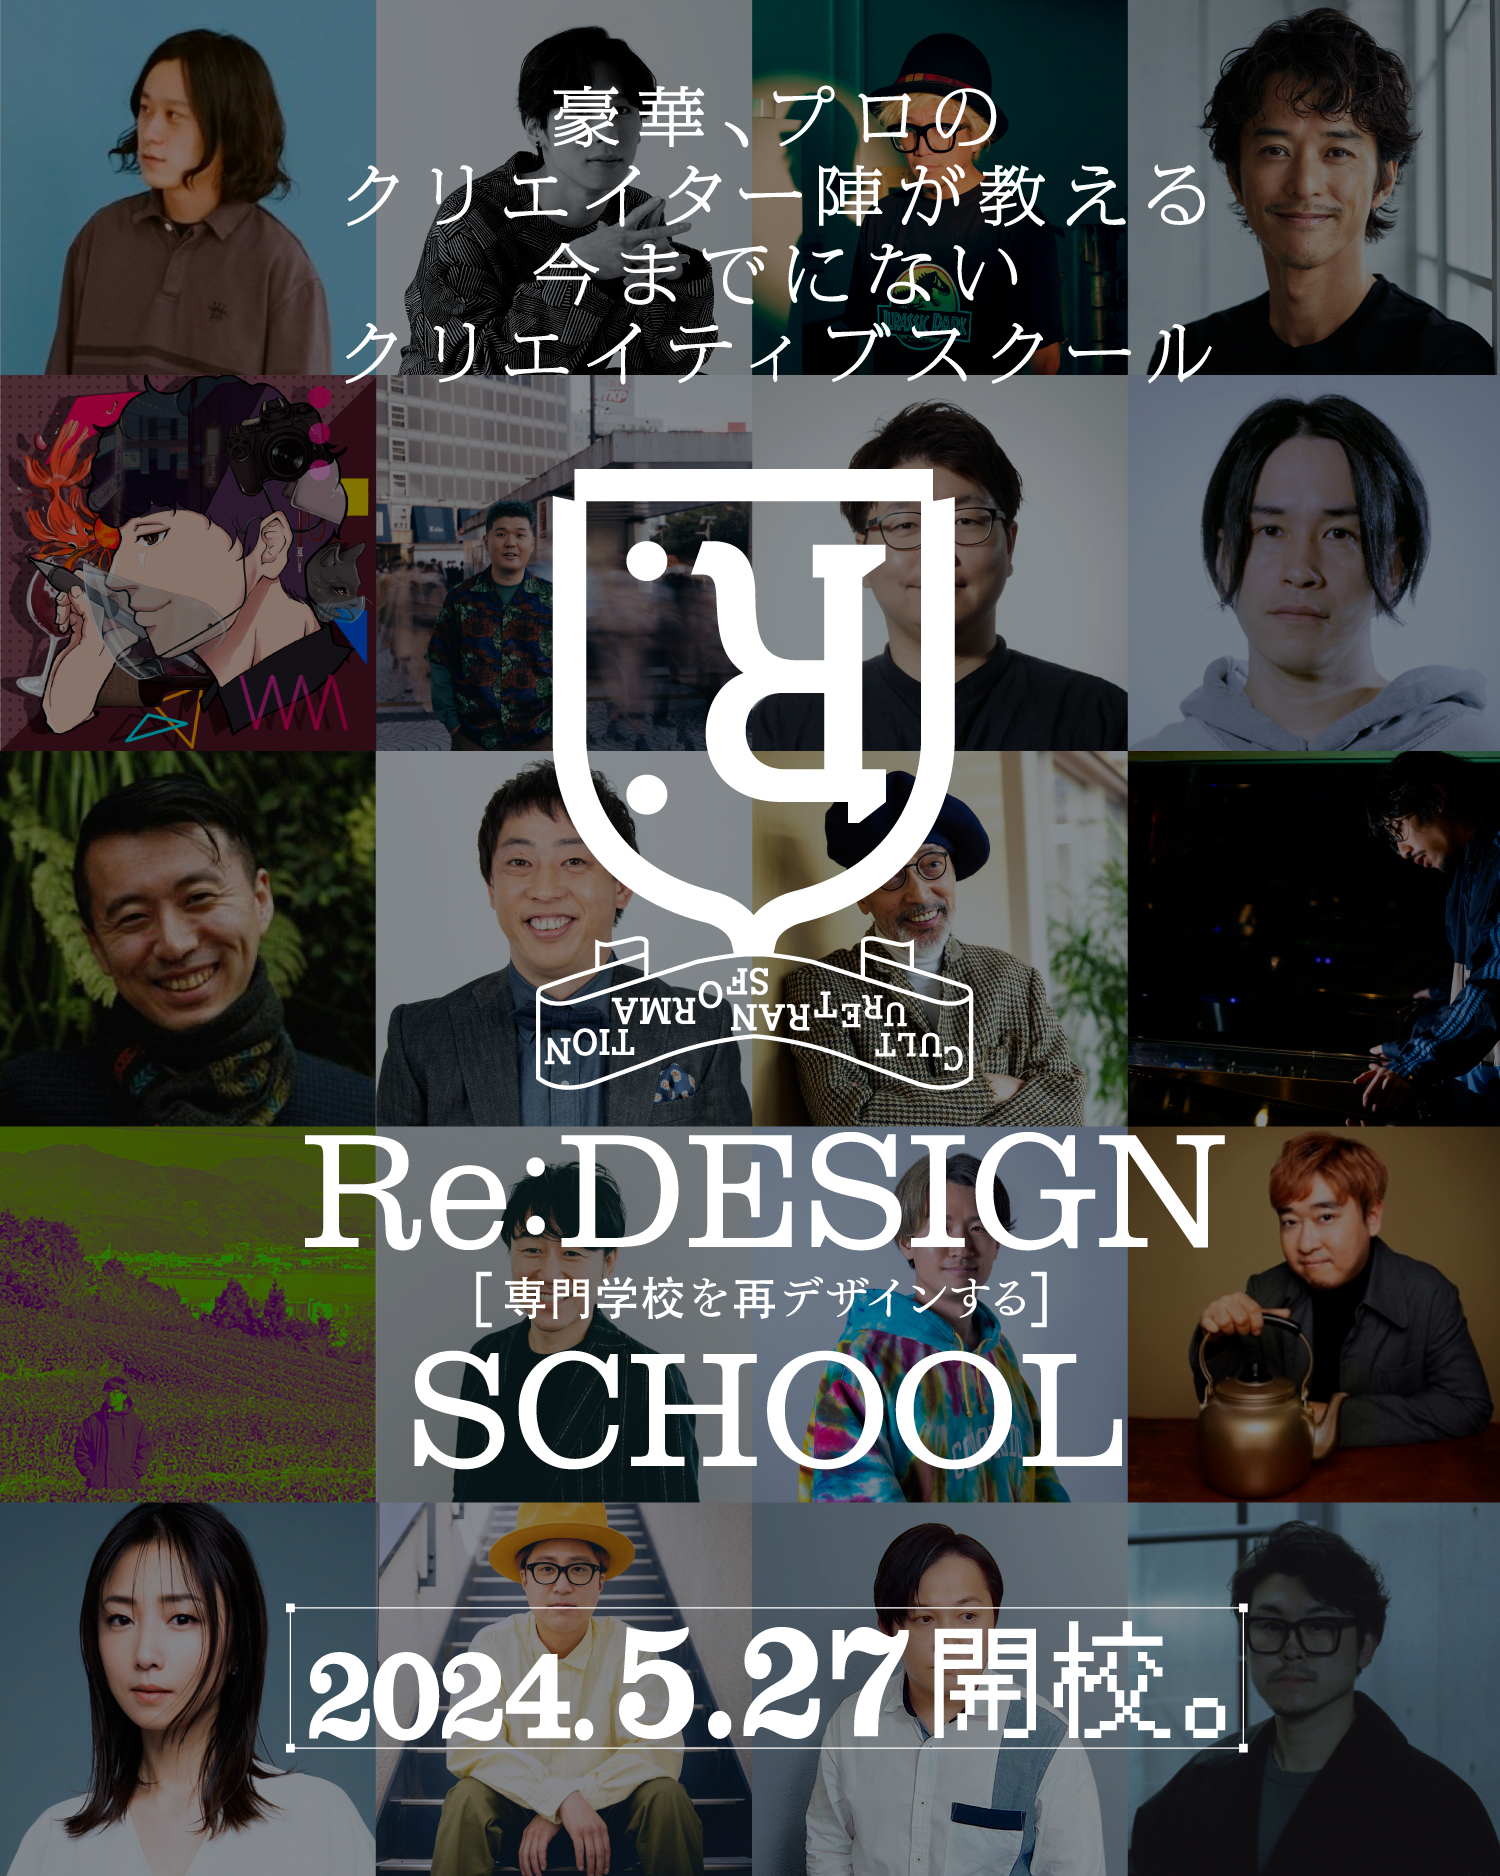 Re:design school1